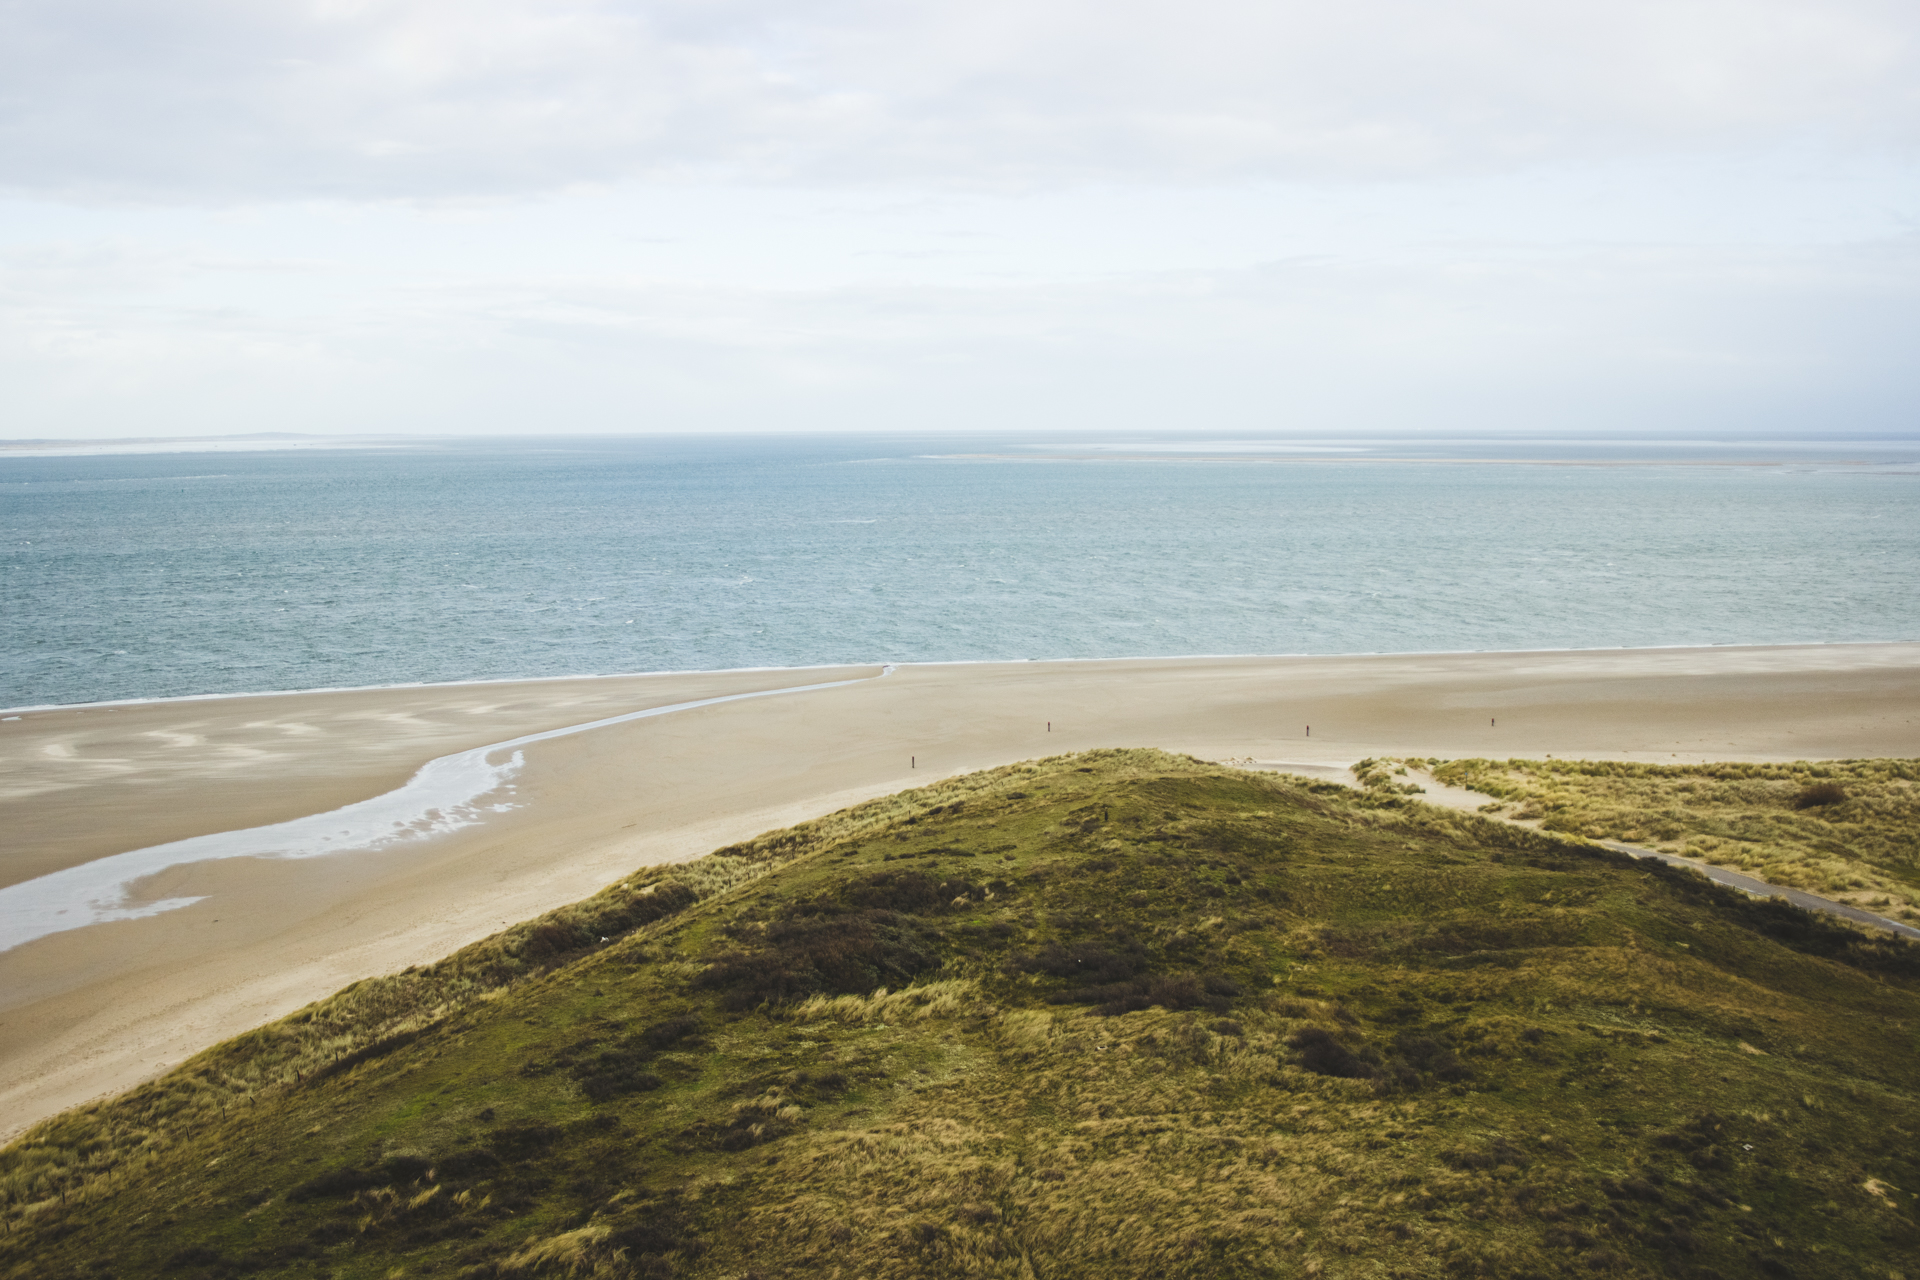 Vue du phare de Texel, photo panoramique de la plage